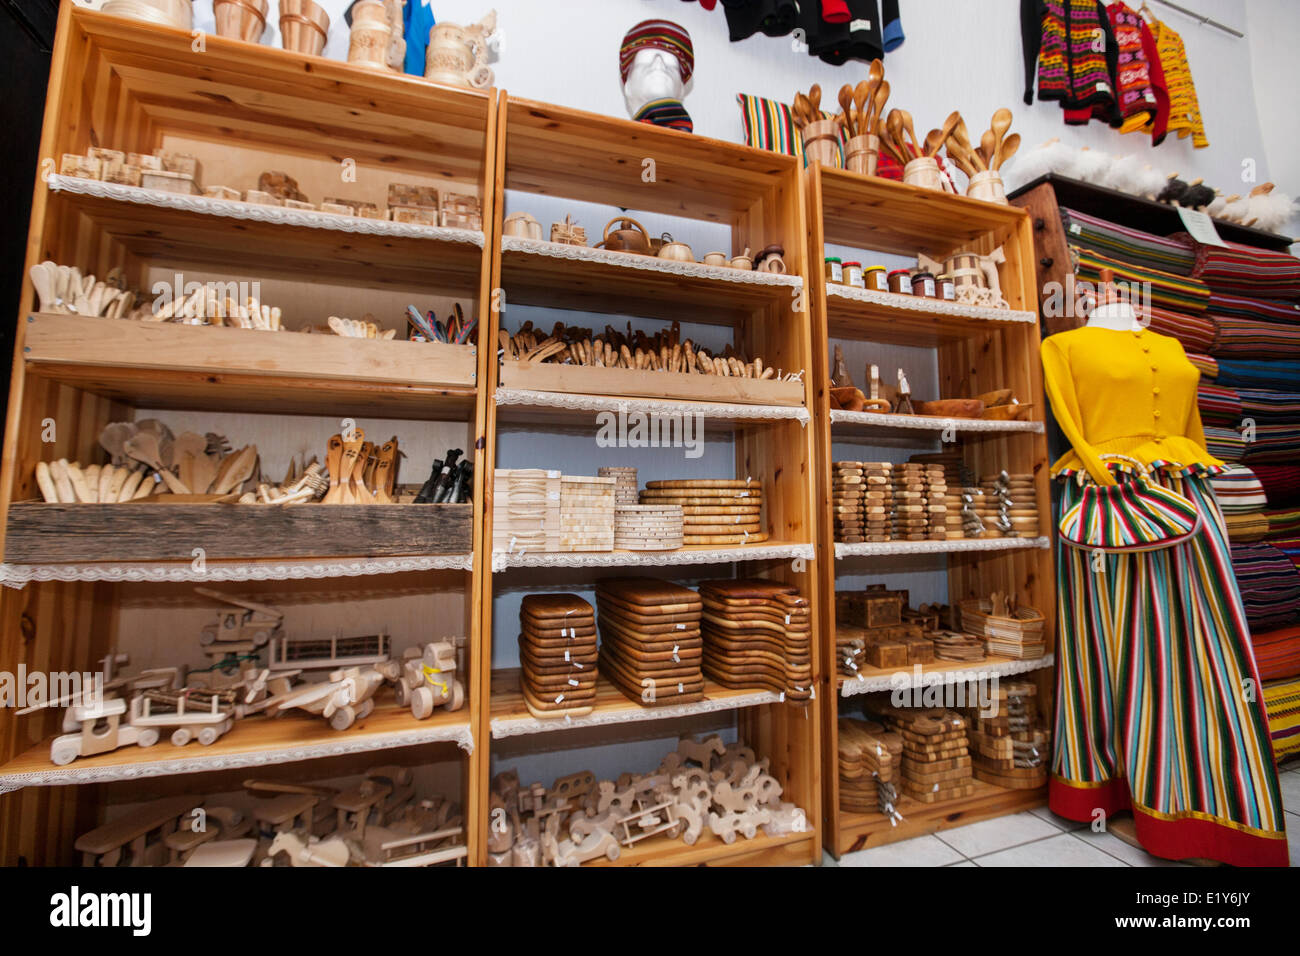 Holz-Handwerk in Regalen Geschenk angezeigt zu speichern Stockfoto